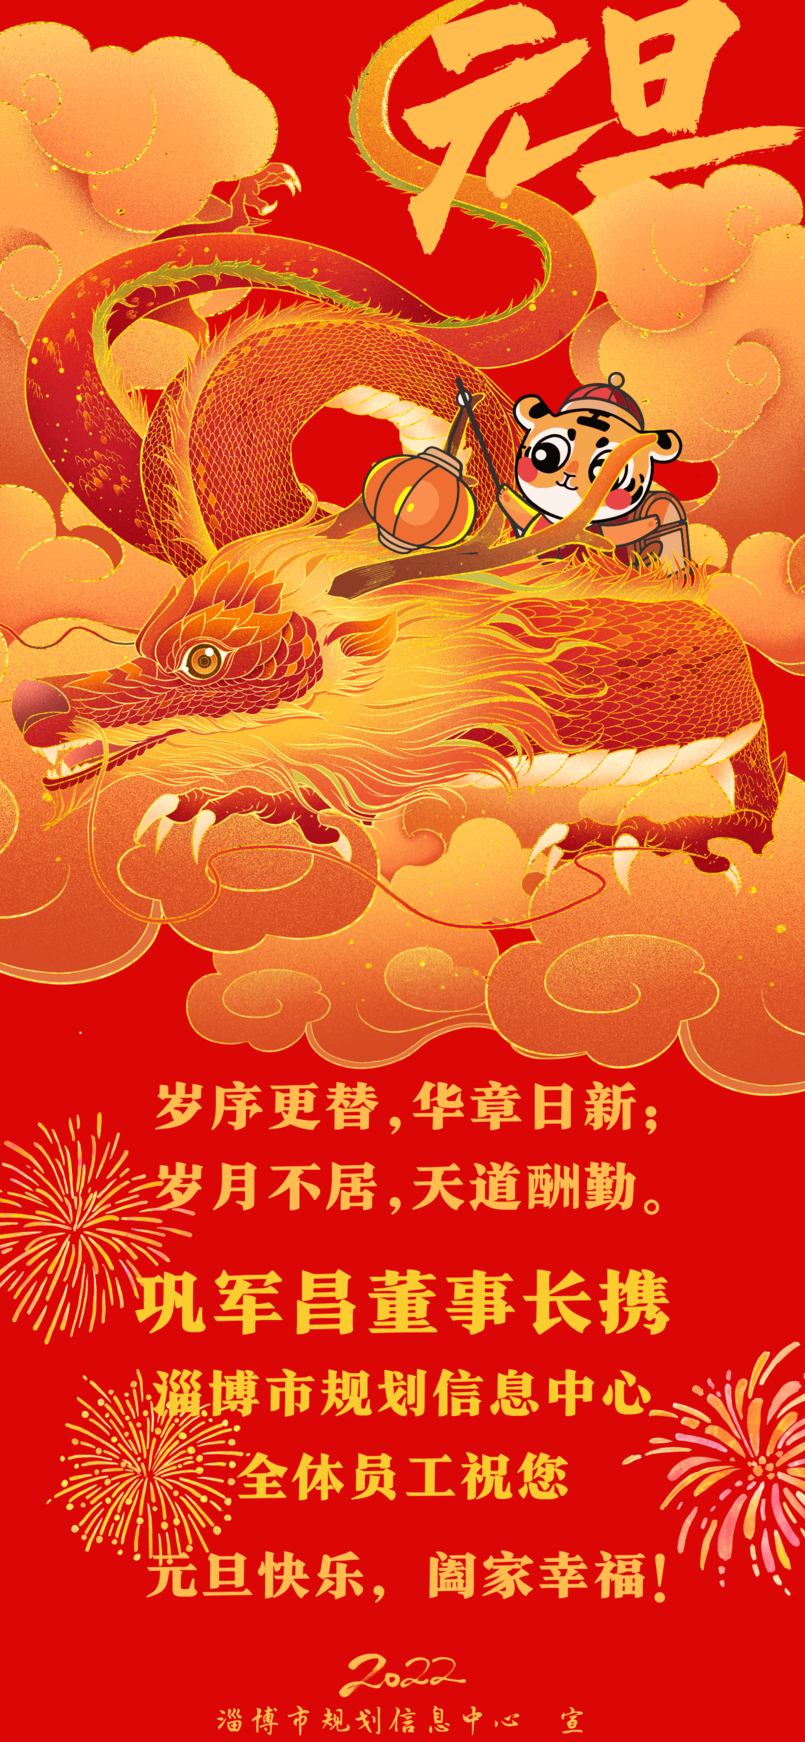 红黄色新年开运牛年主题手绘插画手绘新年节日分享中文手机壁纸 (2).png